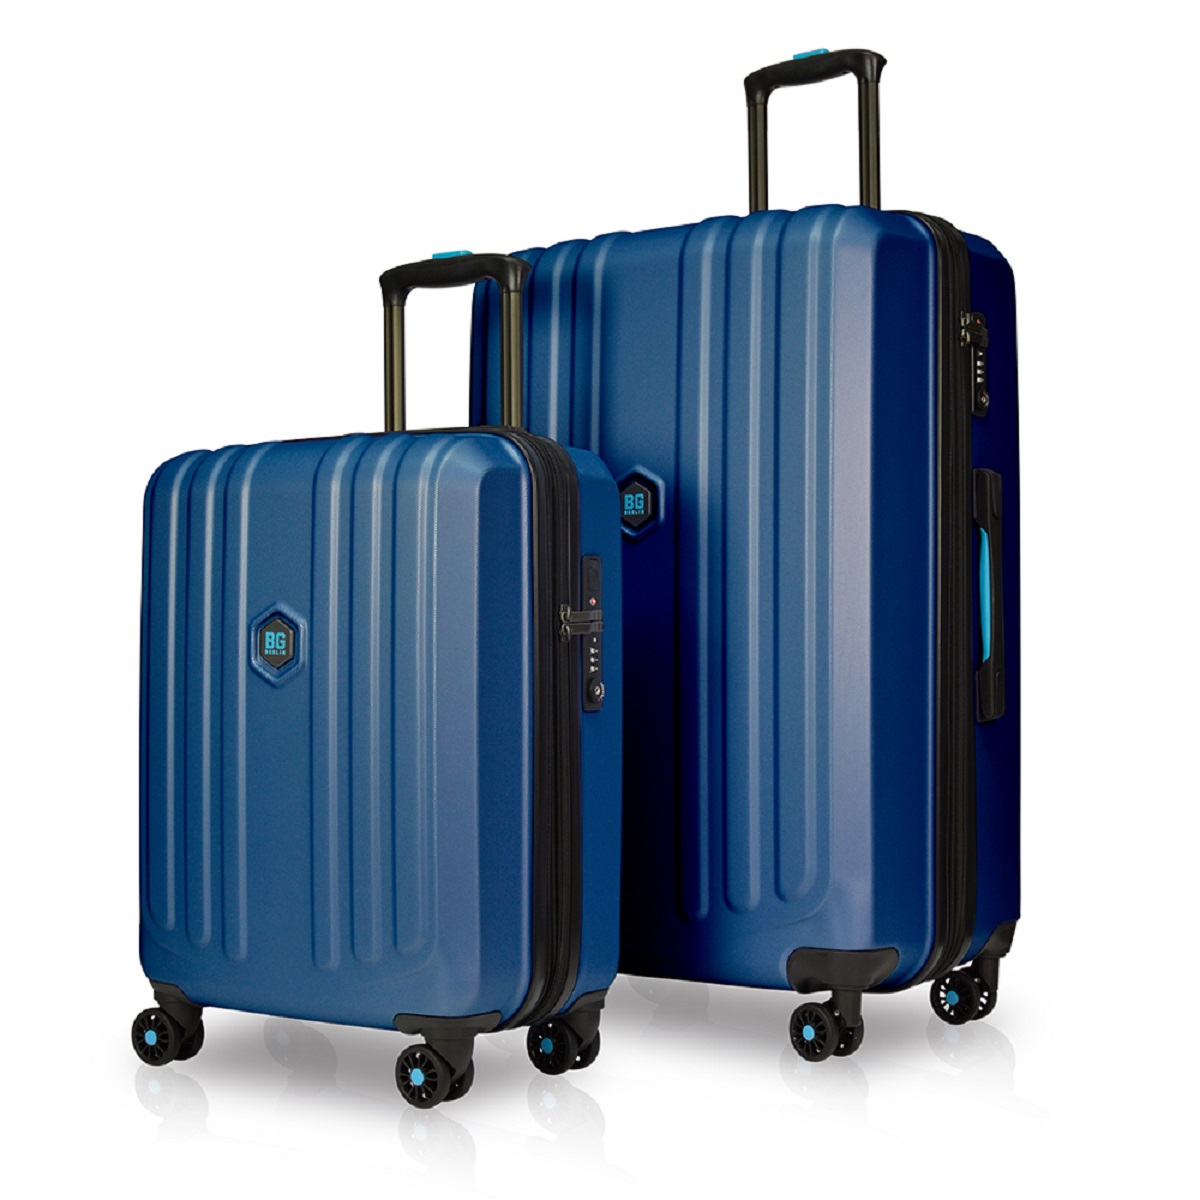 Enduro Luggage - 2er Kofferset Blue - Buy one get one free von BG Berlin